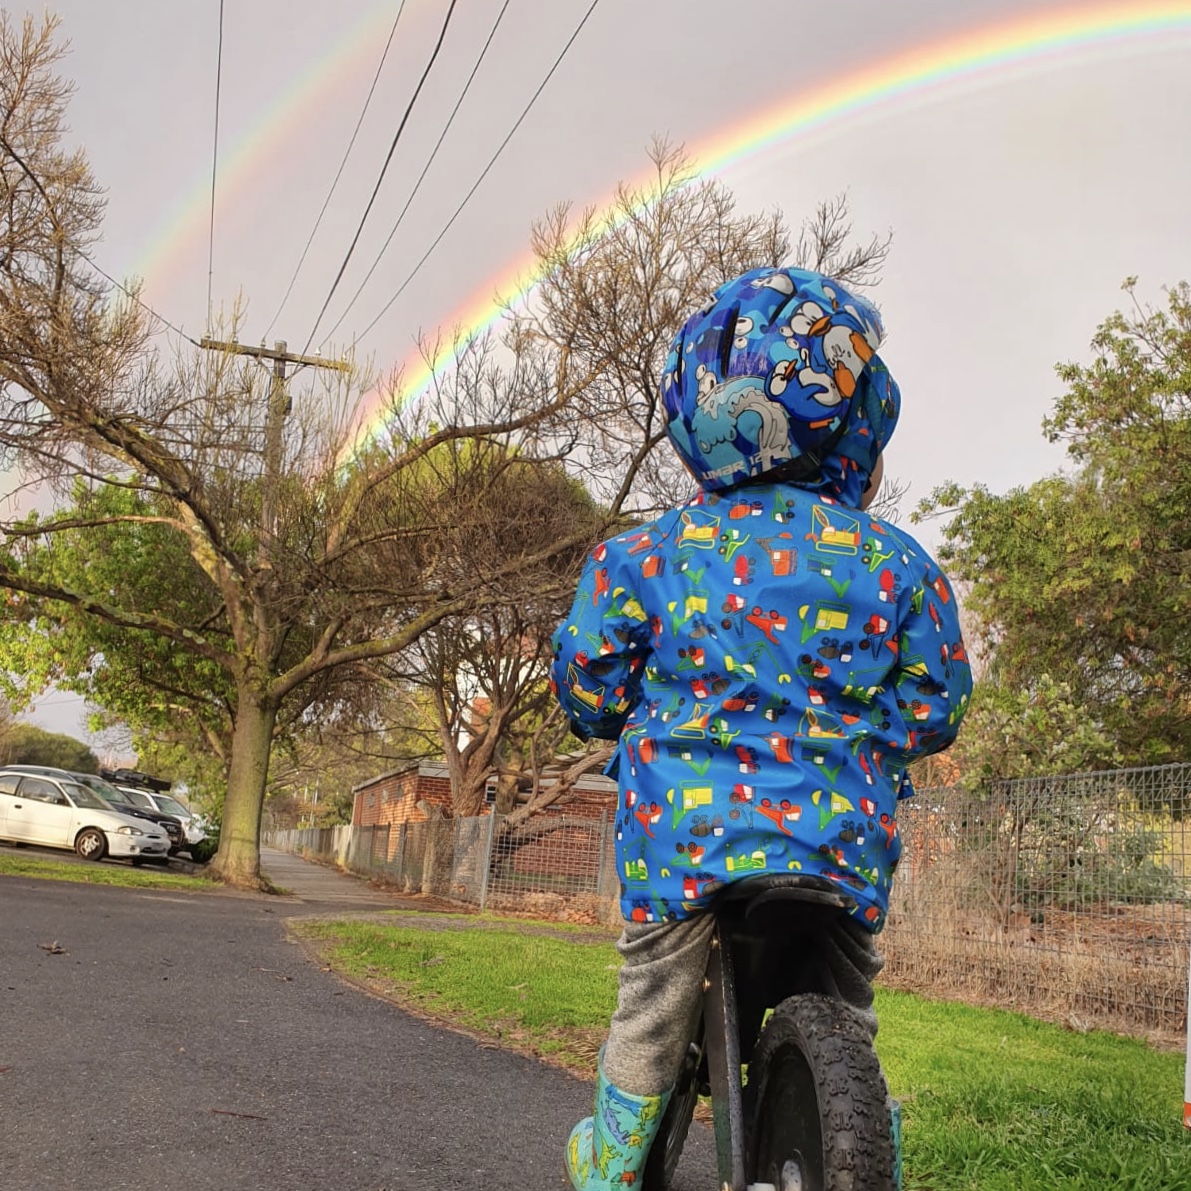 Ventajas de las bicicletas sin pedales para niños - DecoPeques